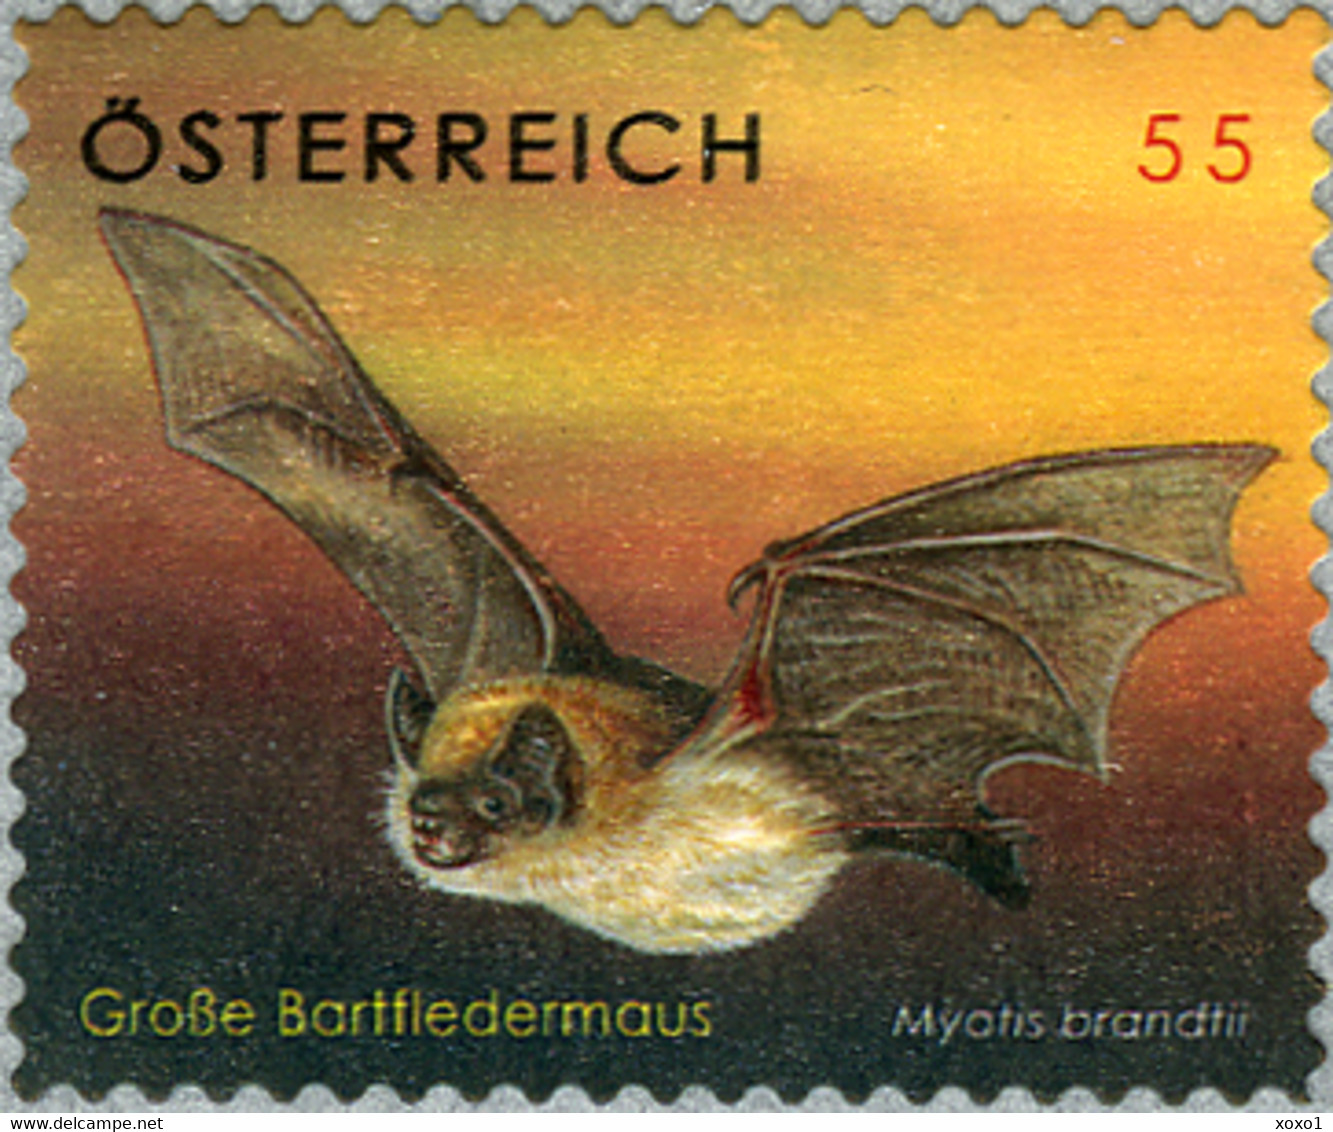 Austria 2007 MiNr. 2651 Österreich Bats  Brandt's Bat 1v  MNH** 2.50 € - Fledermäuse